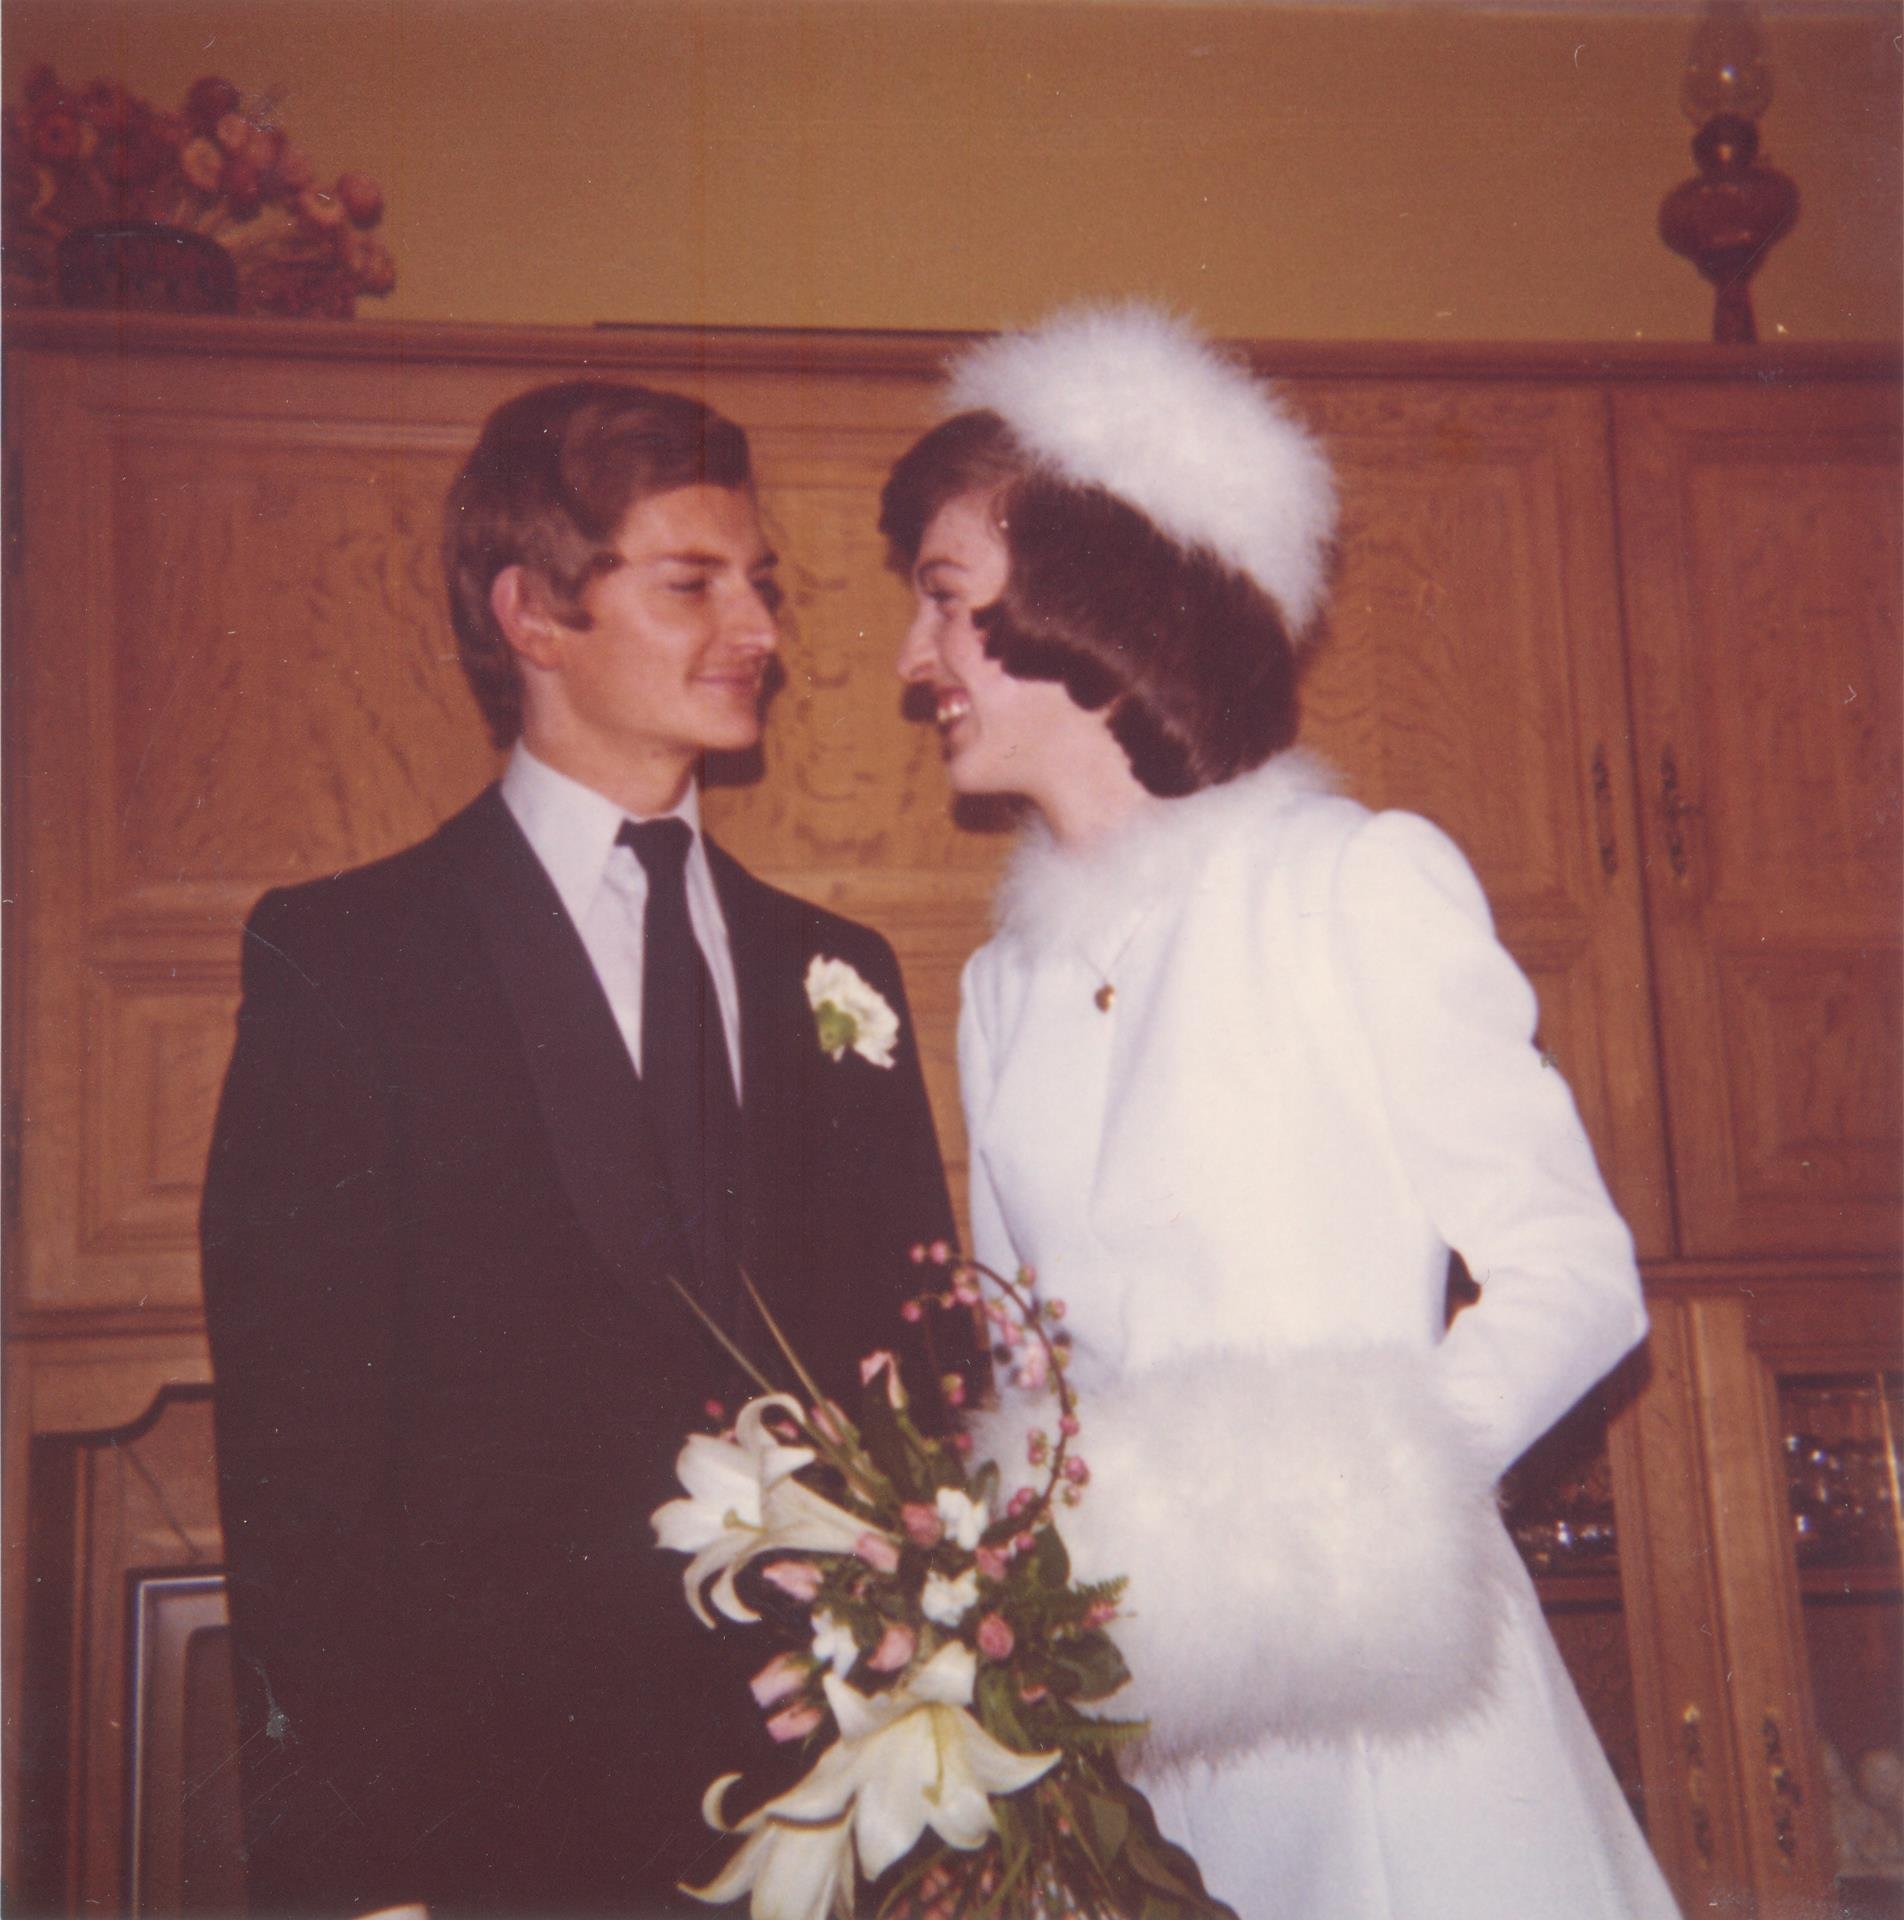 Julia en Guy 45 jaar geleden